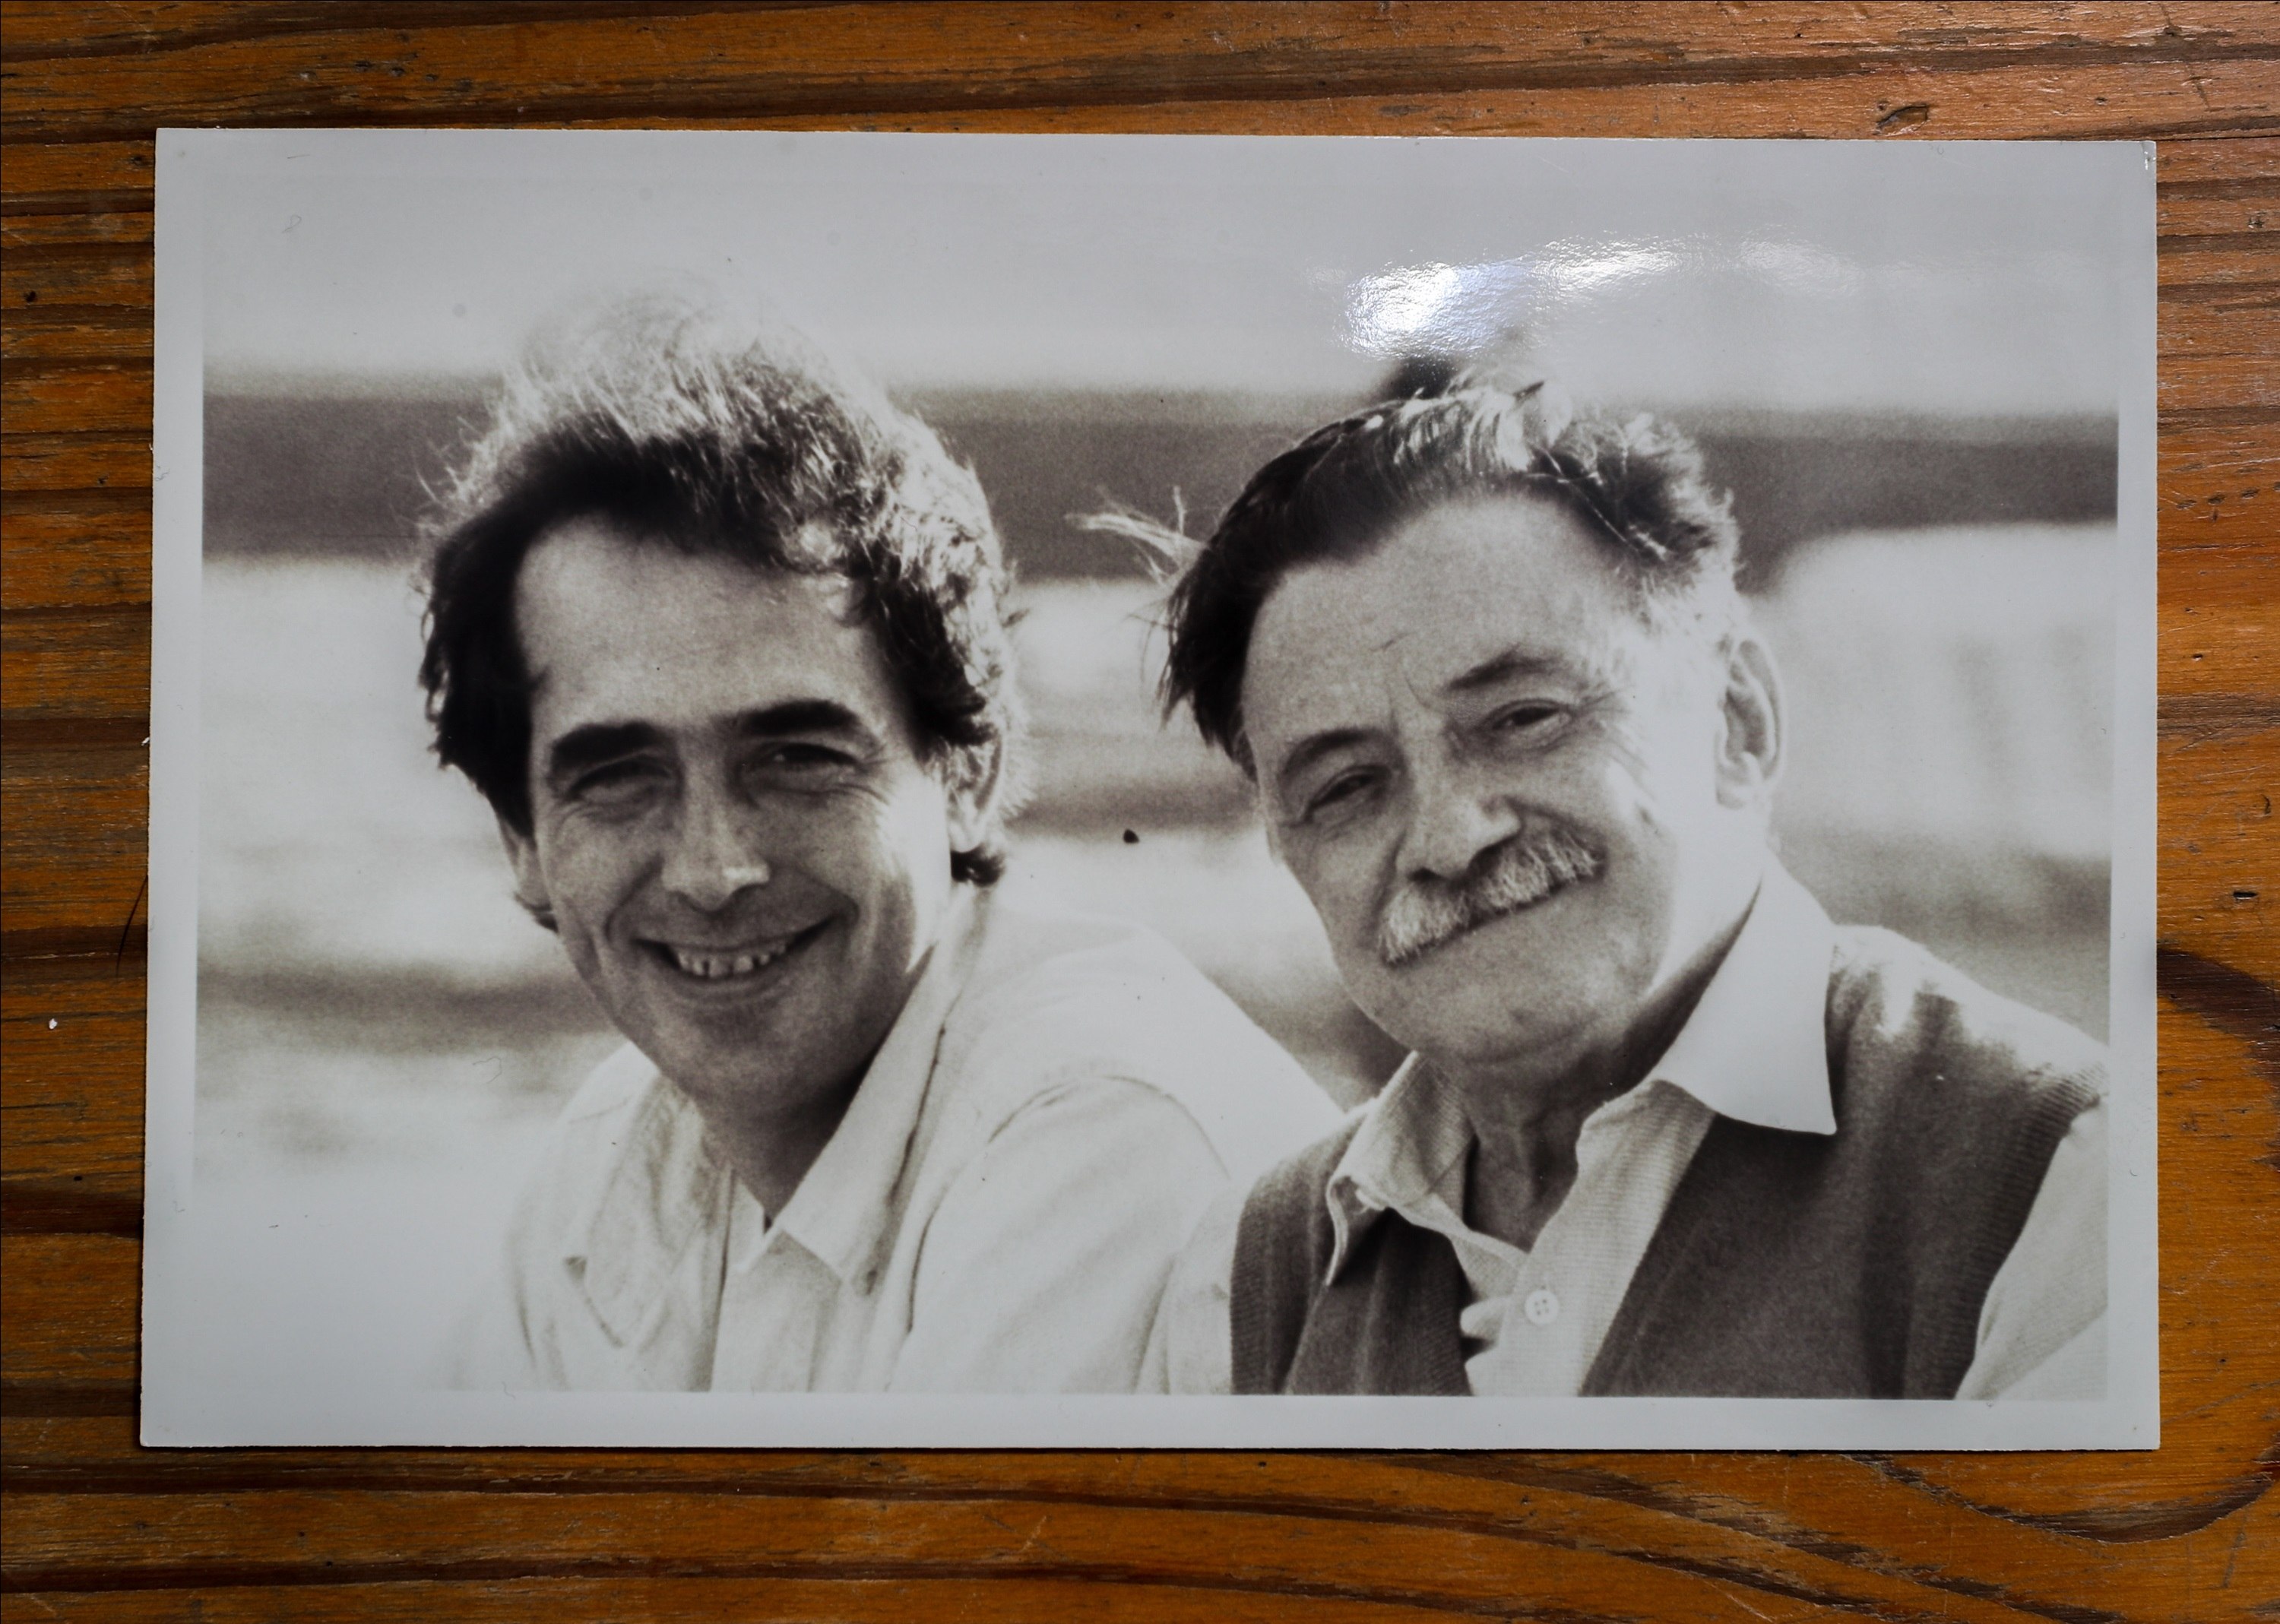 Reproducción fotográfica en la que aparece el cantautor español Joan Manuel Serrat (i) junto al poeta uruguayo Mario Benedetti (d). (Foto Prensa Libre: EFE/ Cortesía Fundación Benedetti)